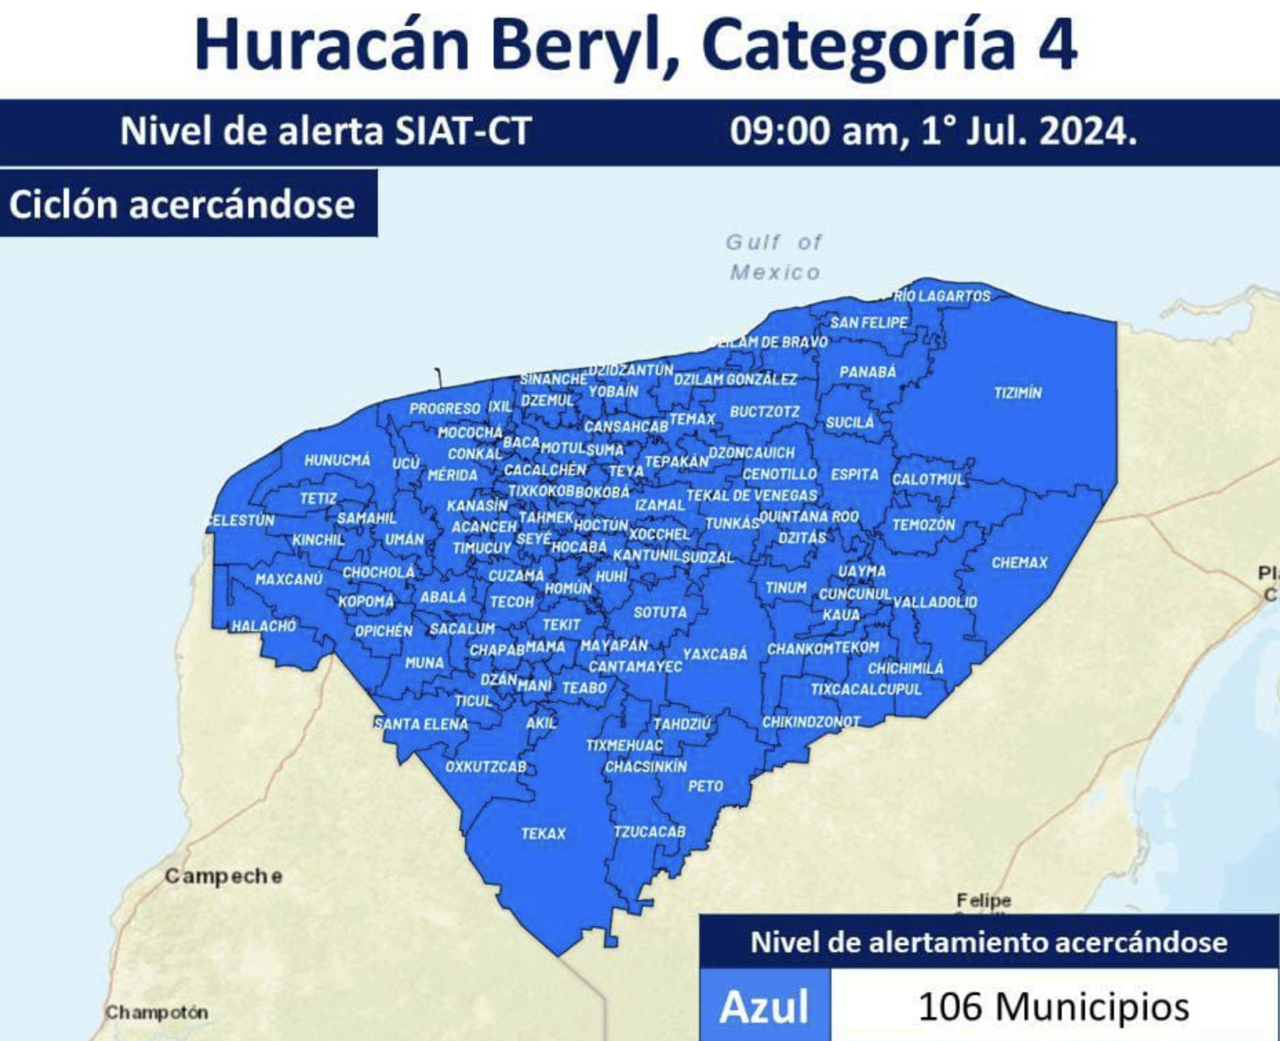 Protección Civil de Yucatán informó emitió la alerta azul para todo el estado ante los posibles efectos que tendría en la zona el huracán “Beryl”.- Foto de Procivy